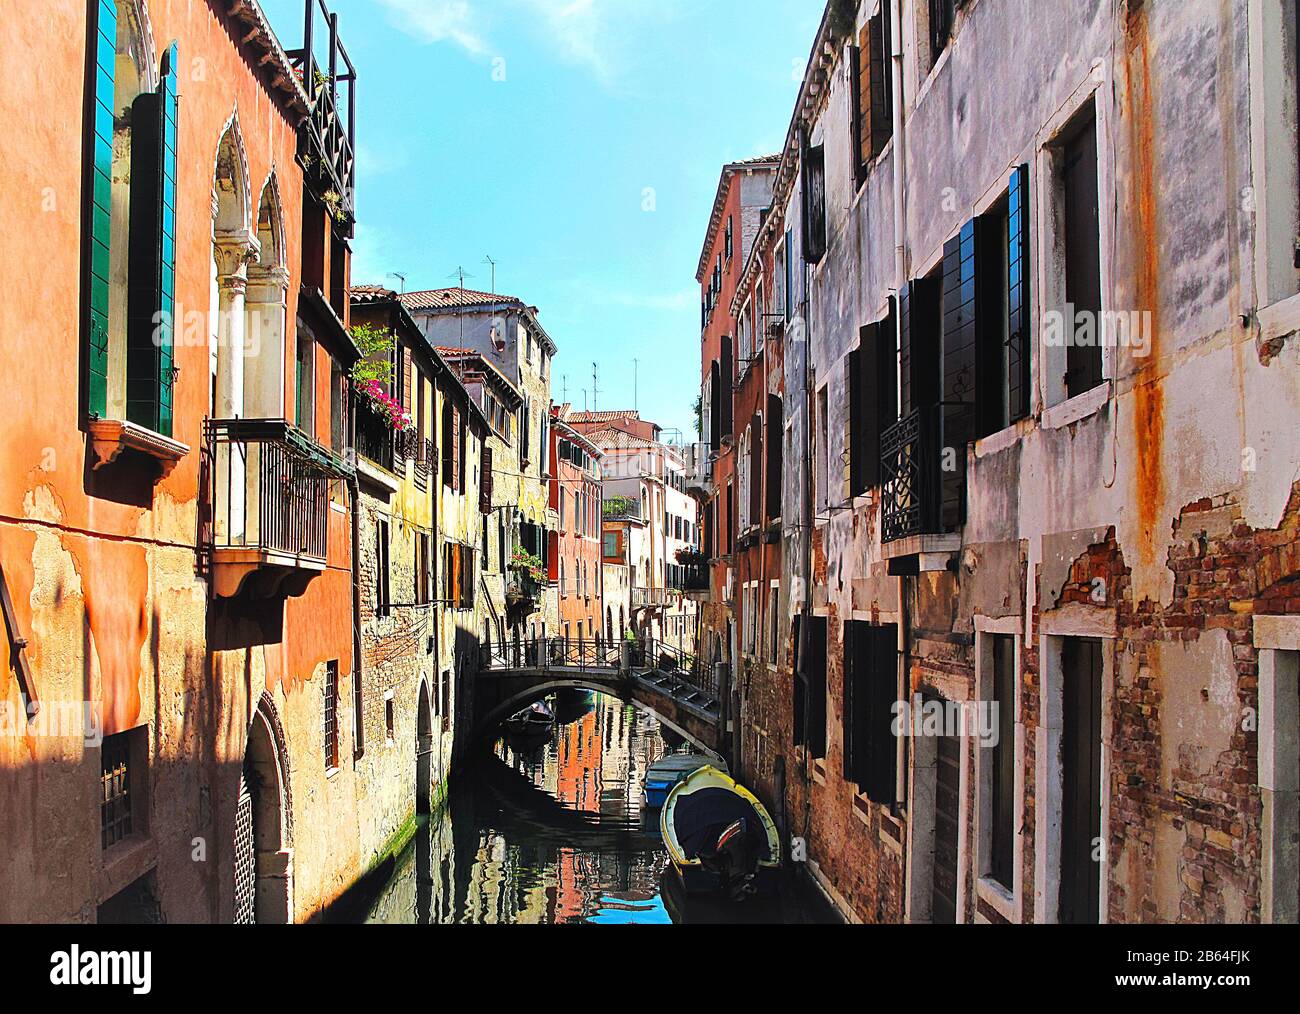 Reddish orange brick walls of narrow canal street, Venice Italy Stock Photo